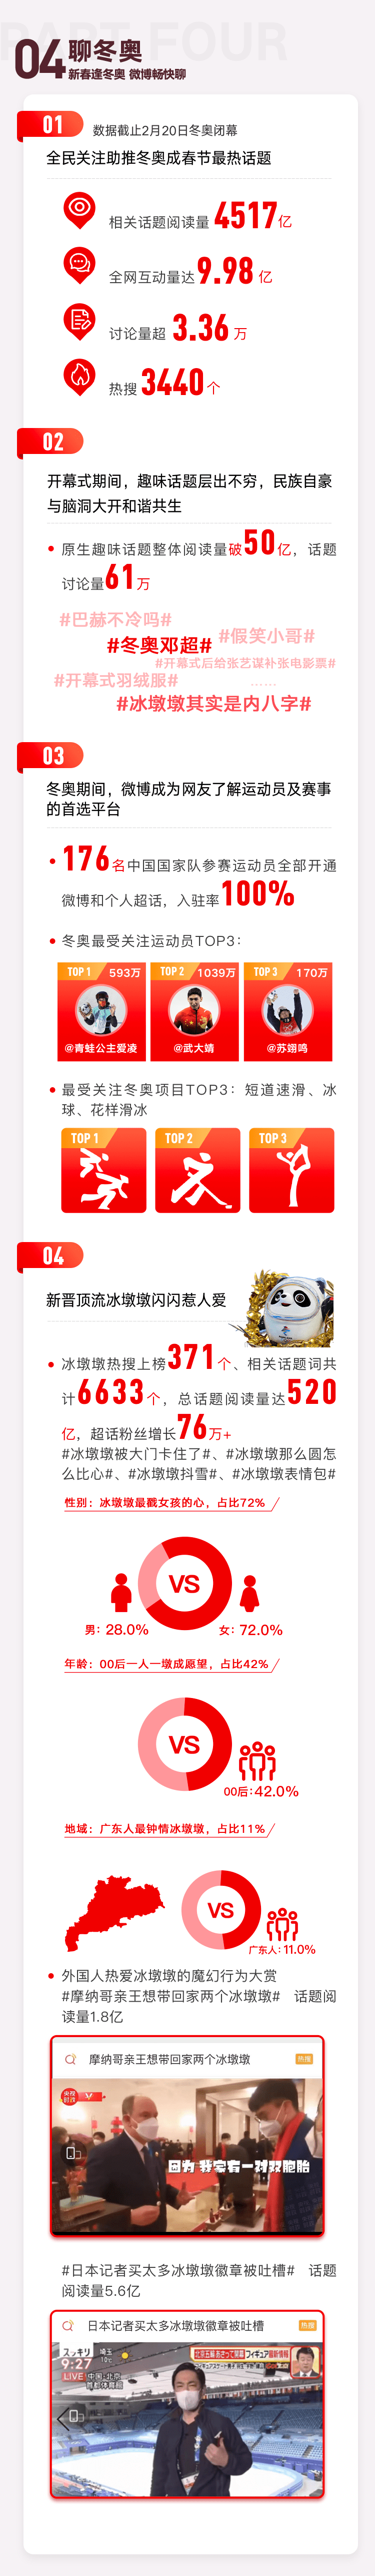 微博发布春节用户行为报告 冬奥会登顶虎年最热话题